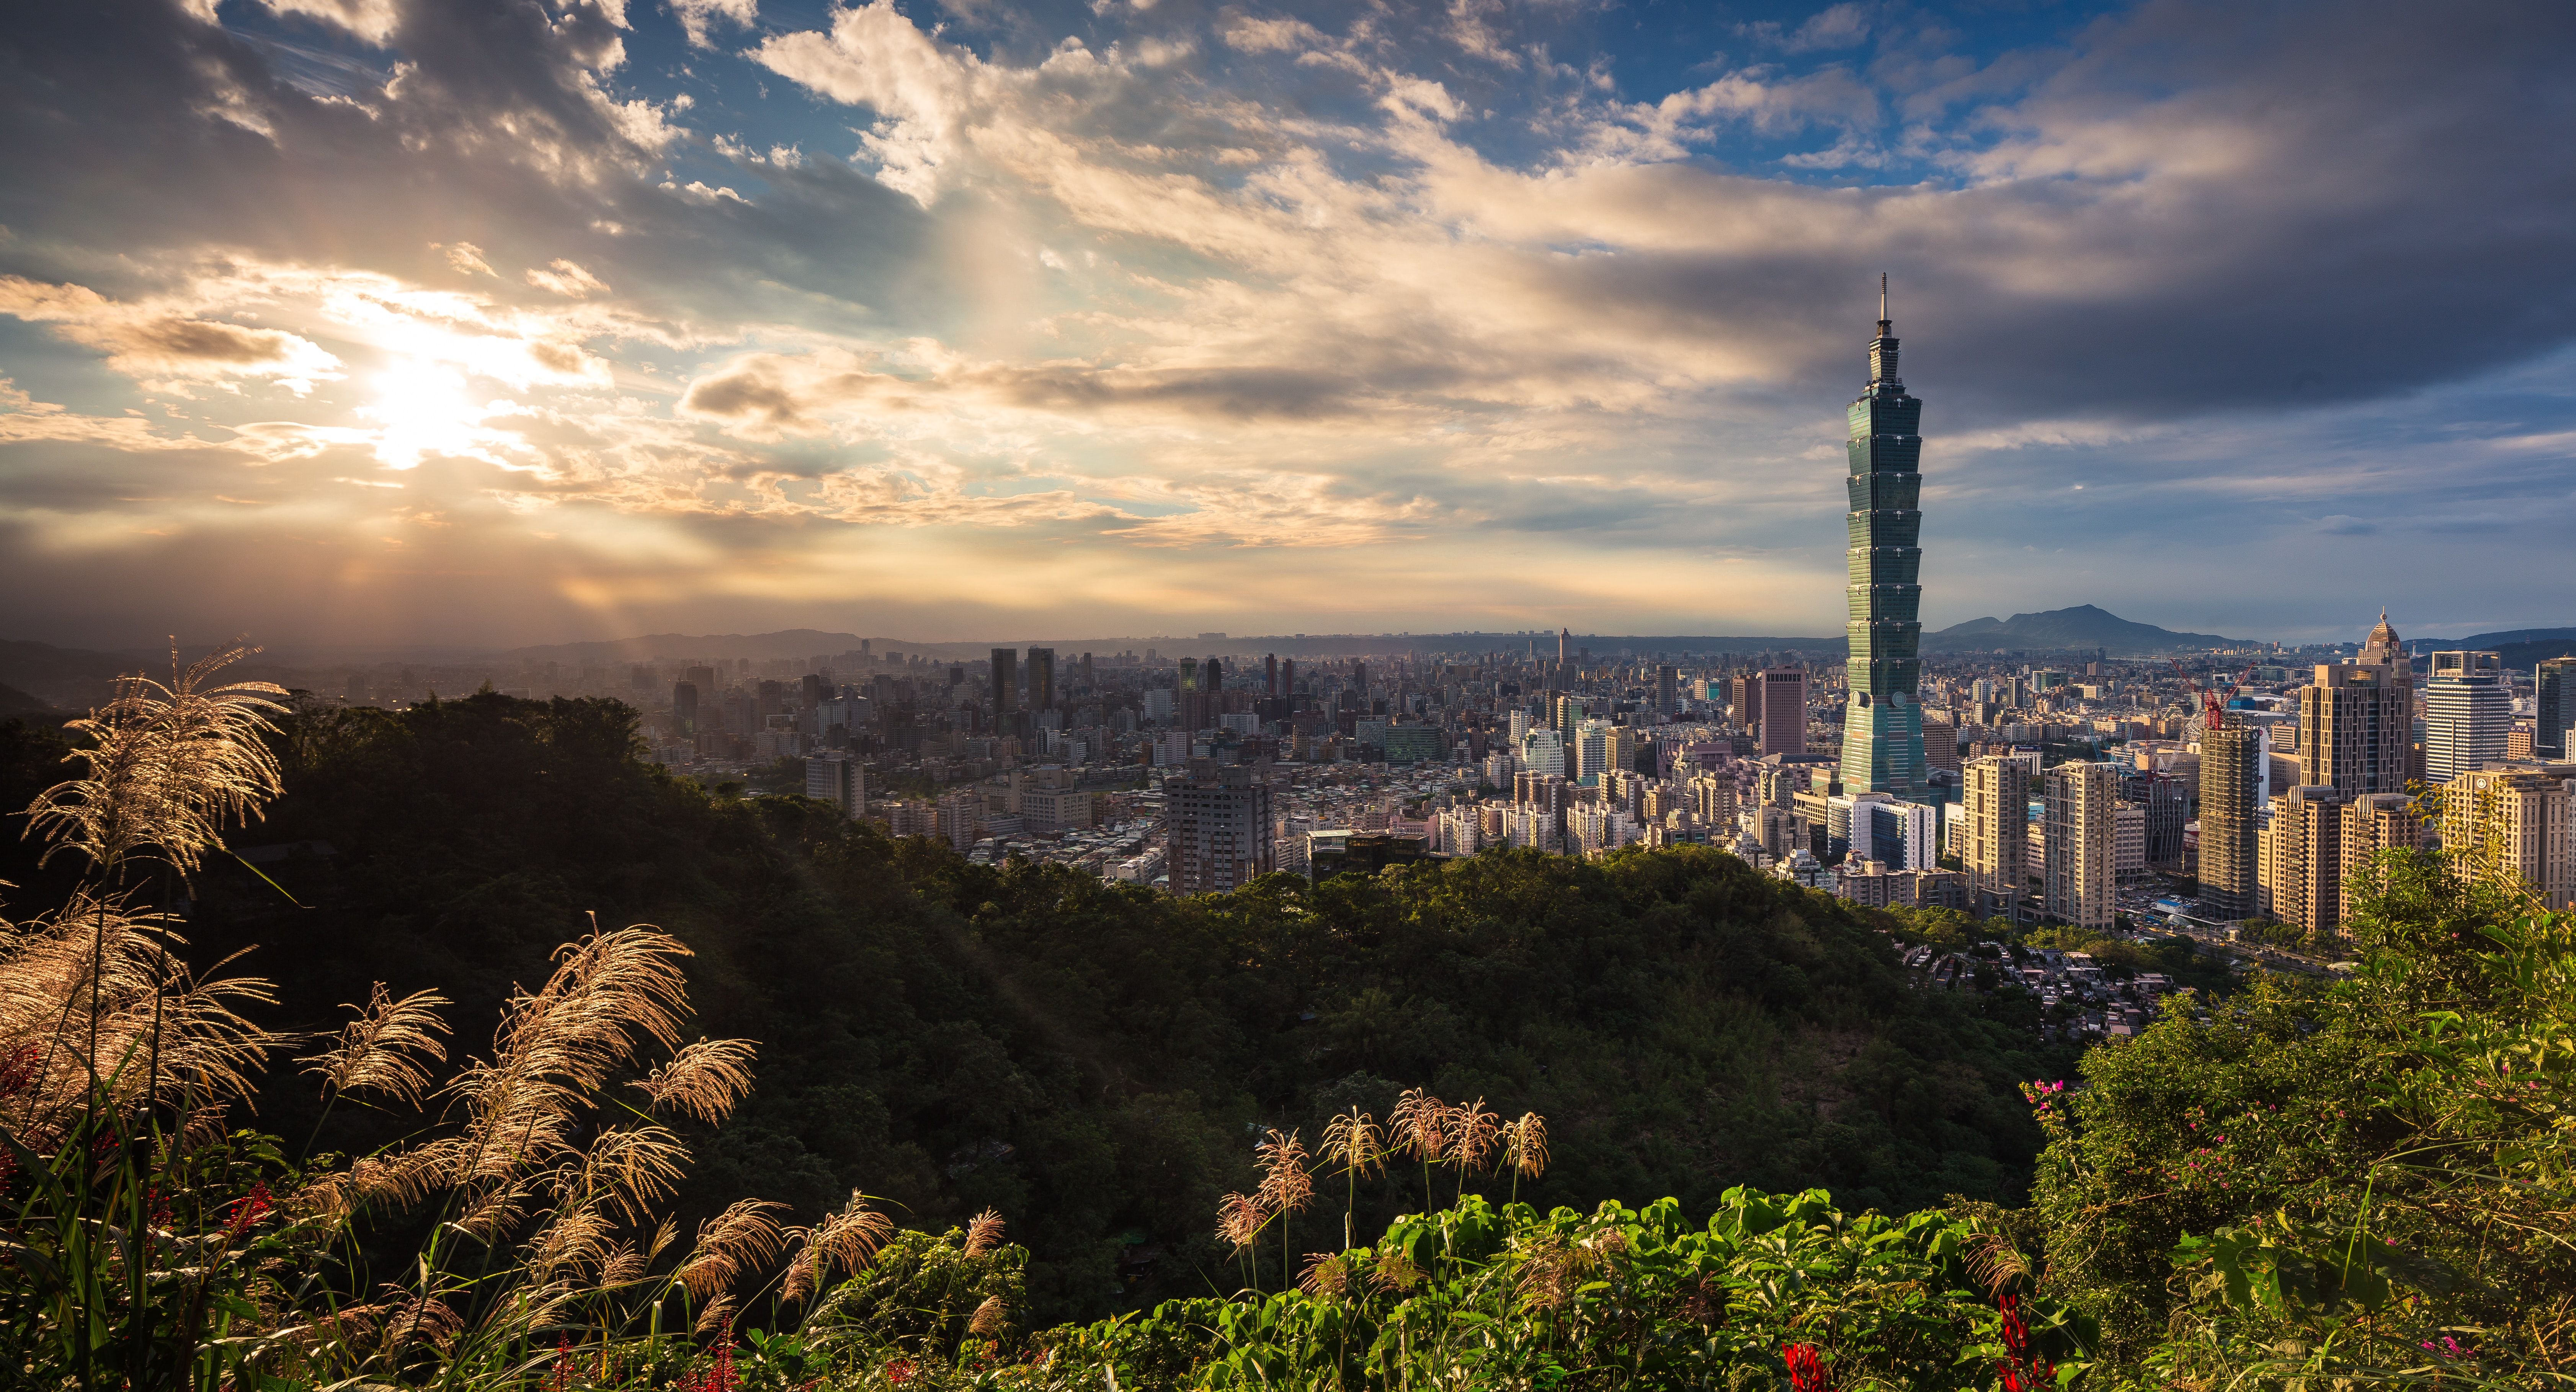 Taipei 101 in Taiwan